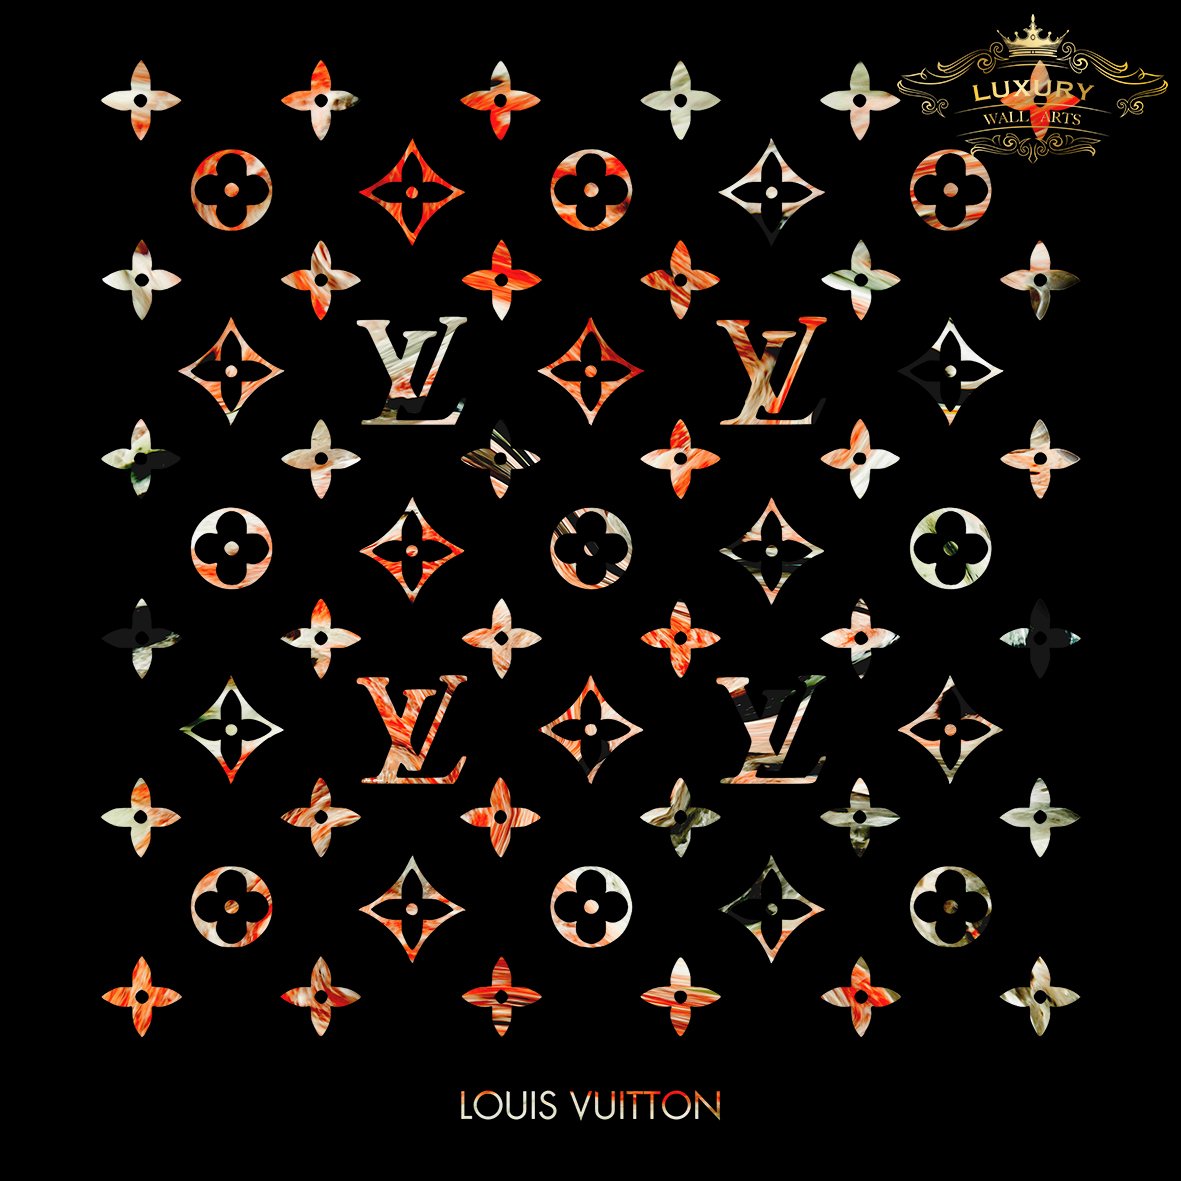 Louis Vuitton Red Rock Posters Prenten En Visuele Kunstwerken